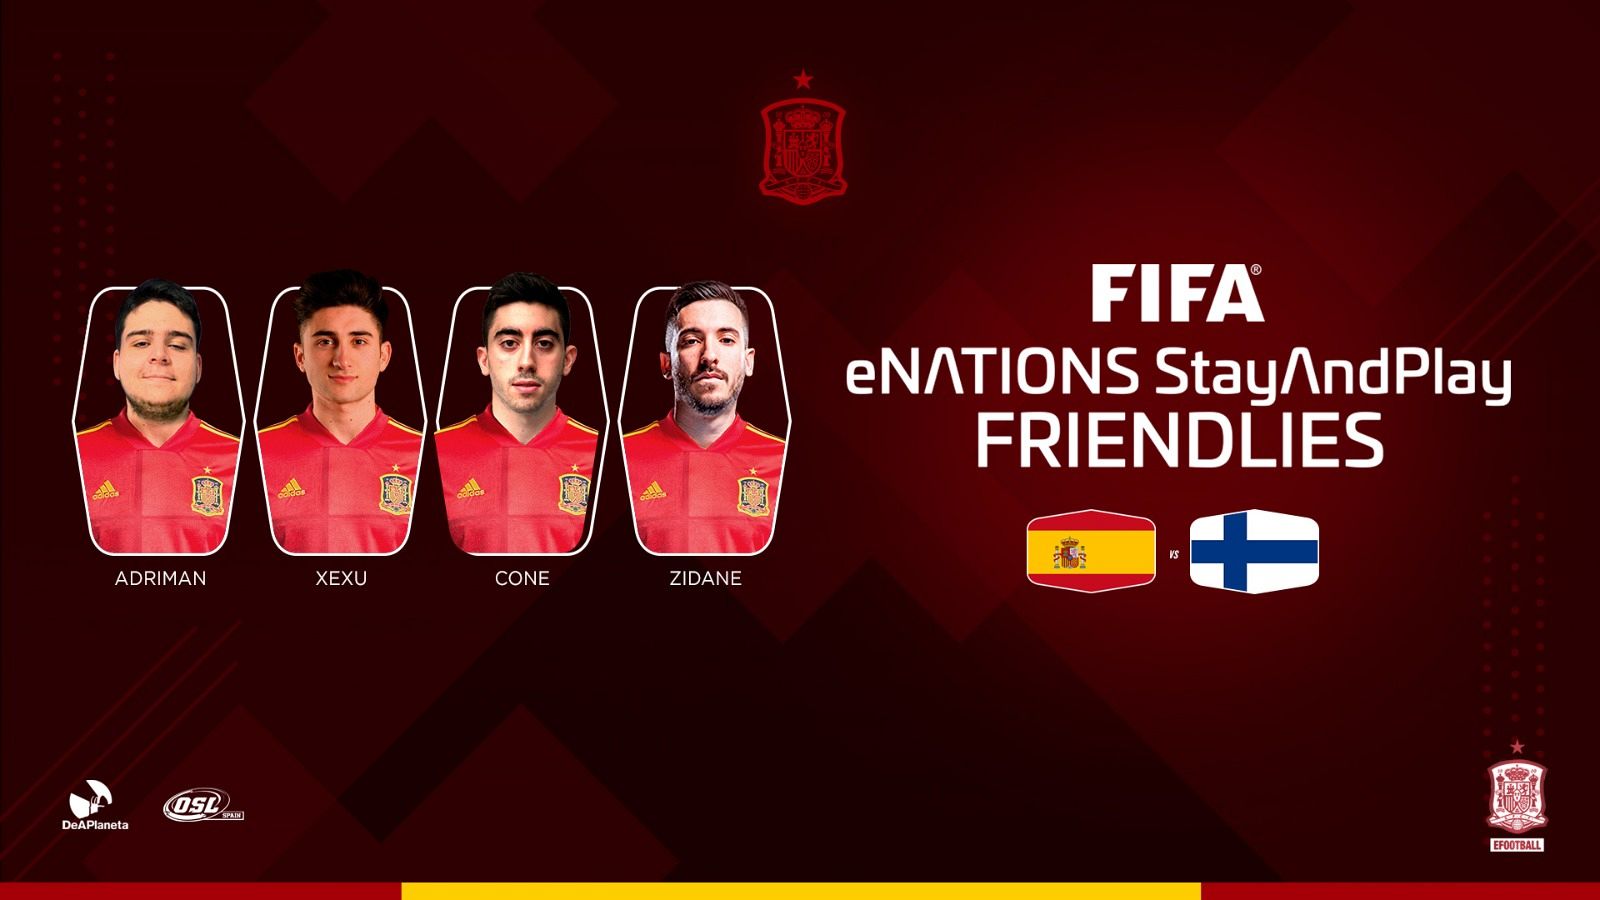 Los jugadores profesionales de FIFA, Adriman, Xexu, Cone y Zidane10, que representarán a España en el partido de 'efootball' contra Finlandia